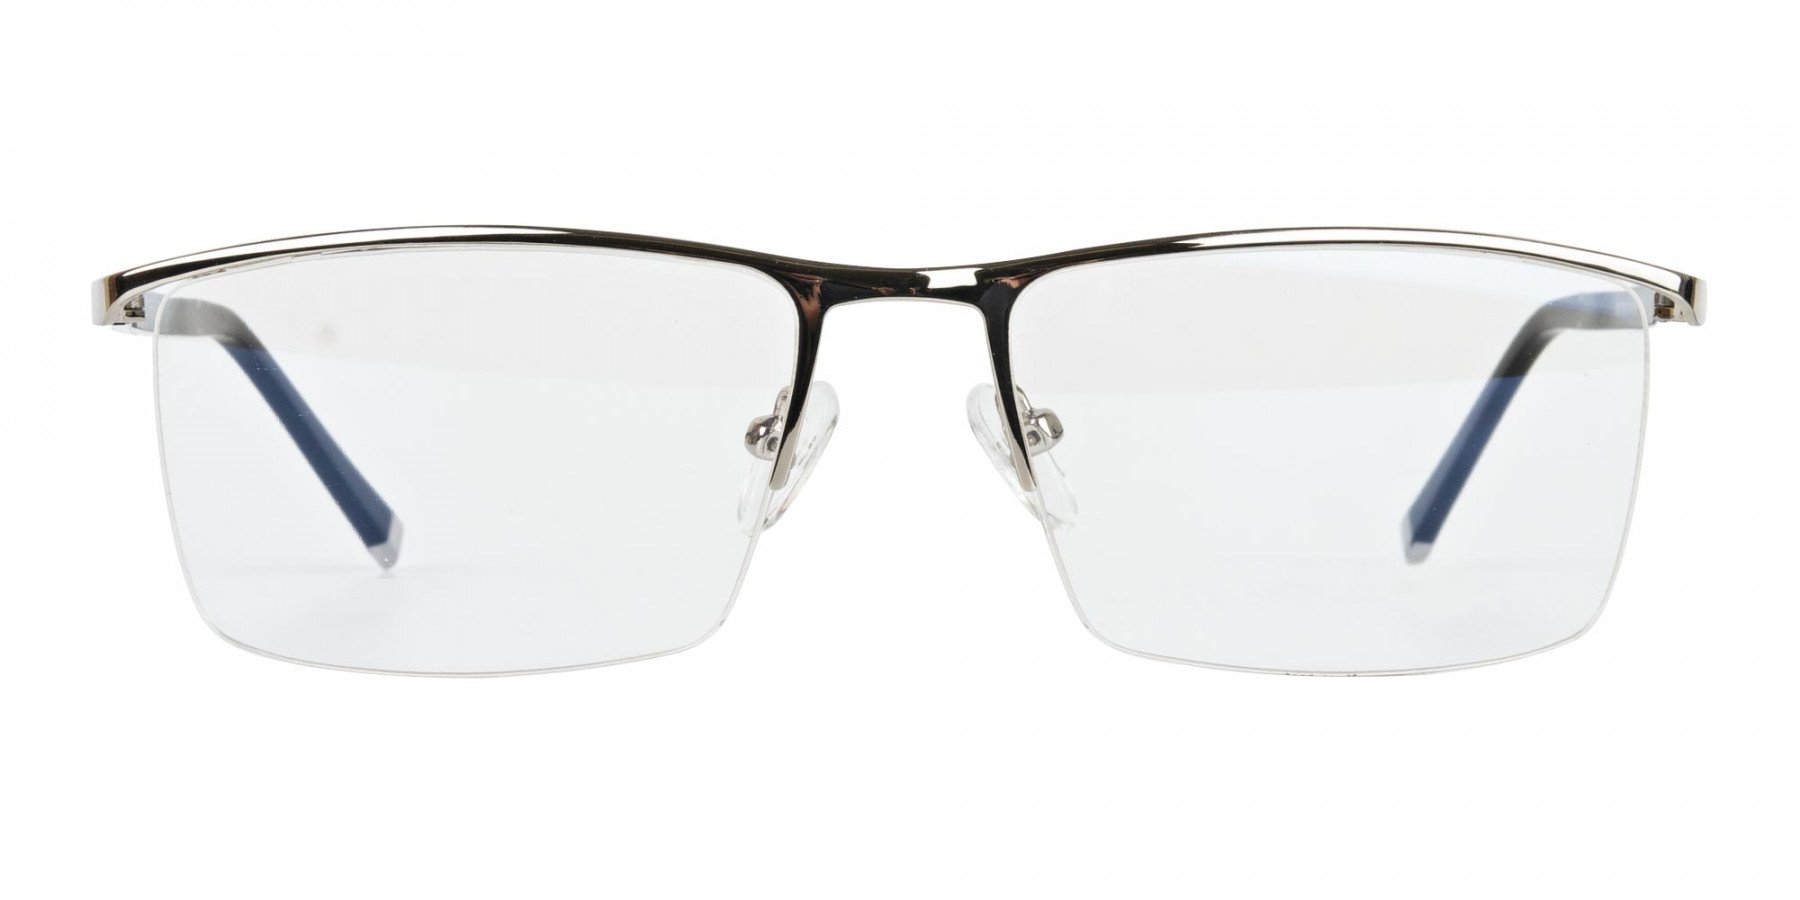 Silver and Black Semi-Rim Glasses-1